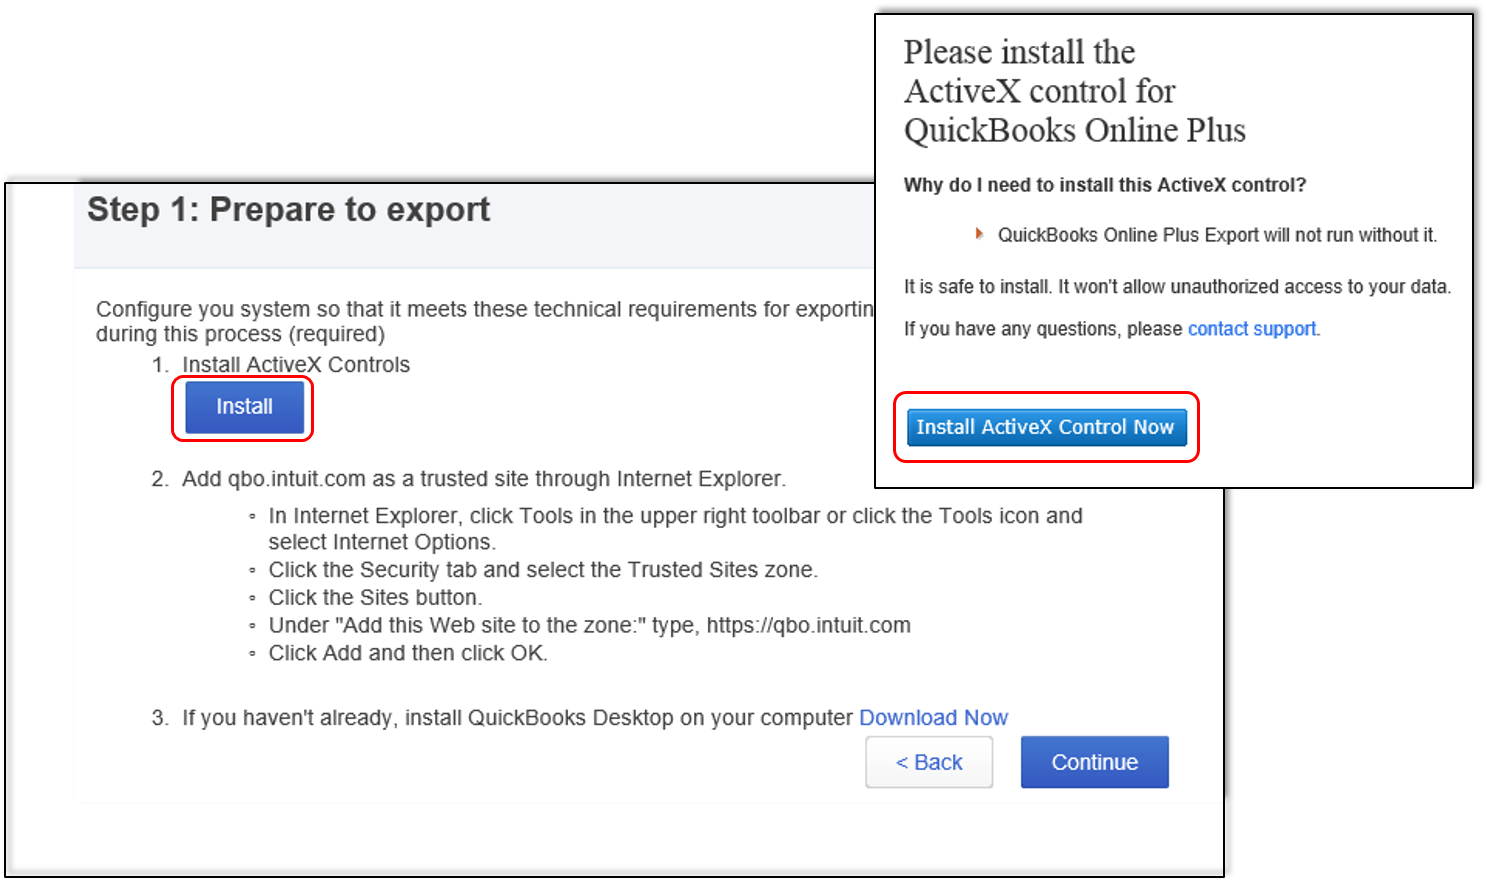 error this version of quickbooks requires internet explorer 6.0